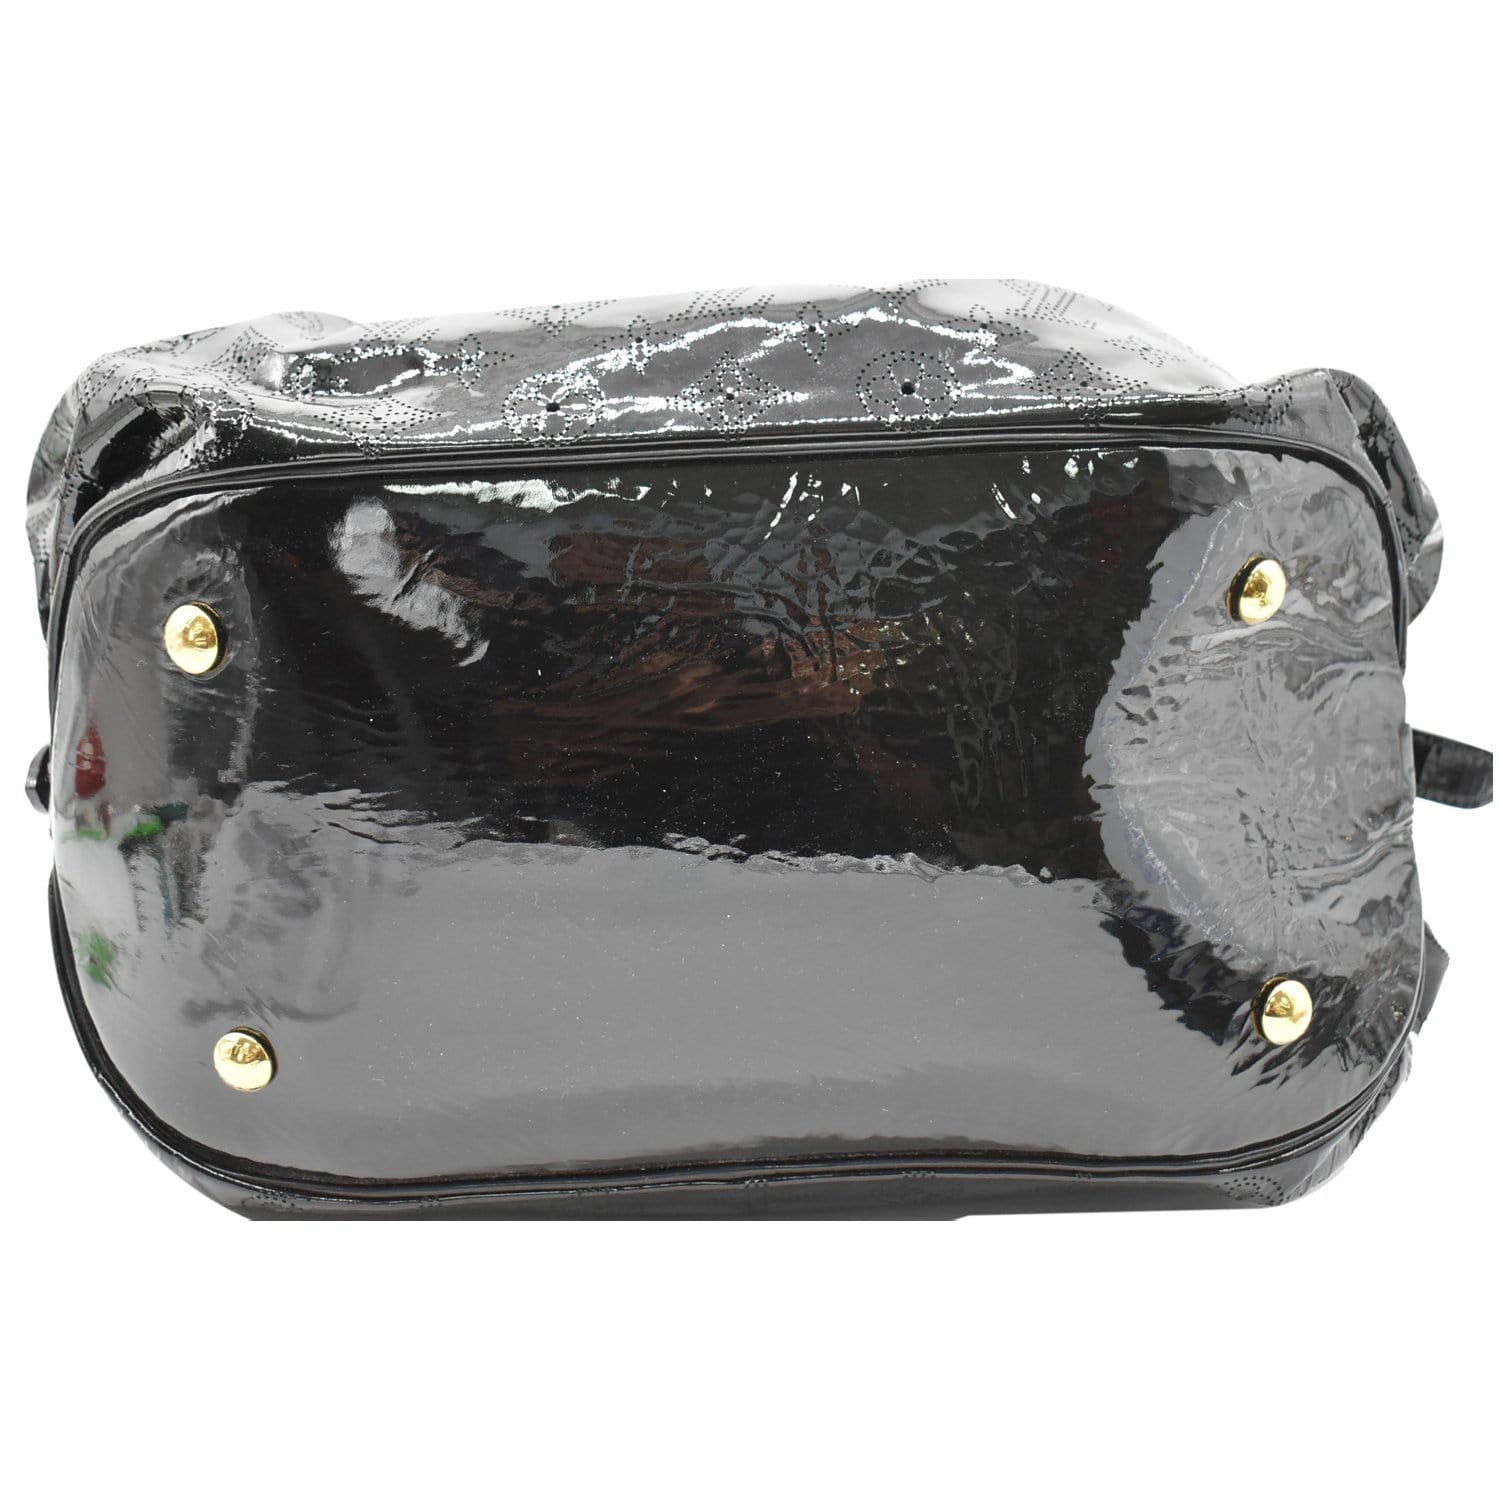 BLACK LOUIS VUITTON XL MAHINA BAG PURSE Handbag EXC. CONDITION